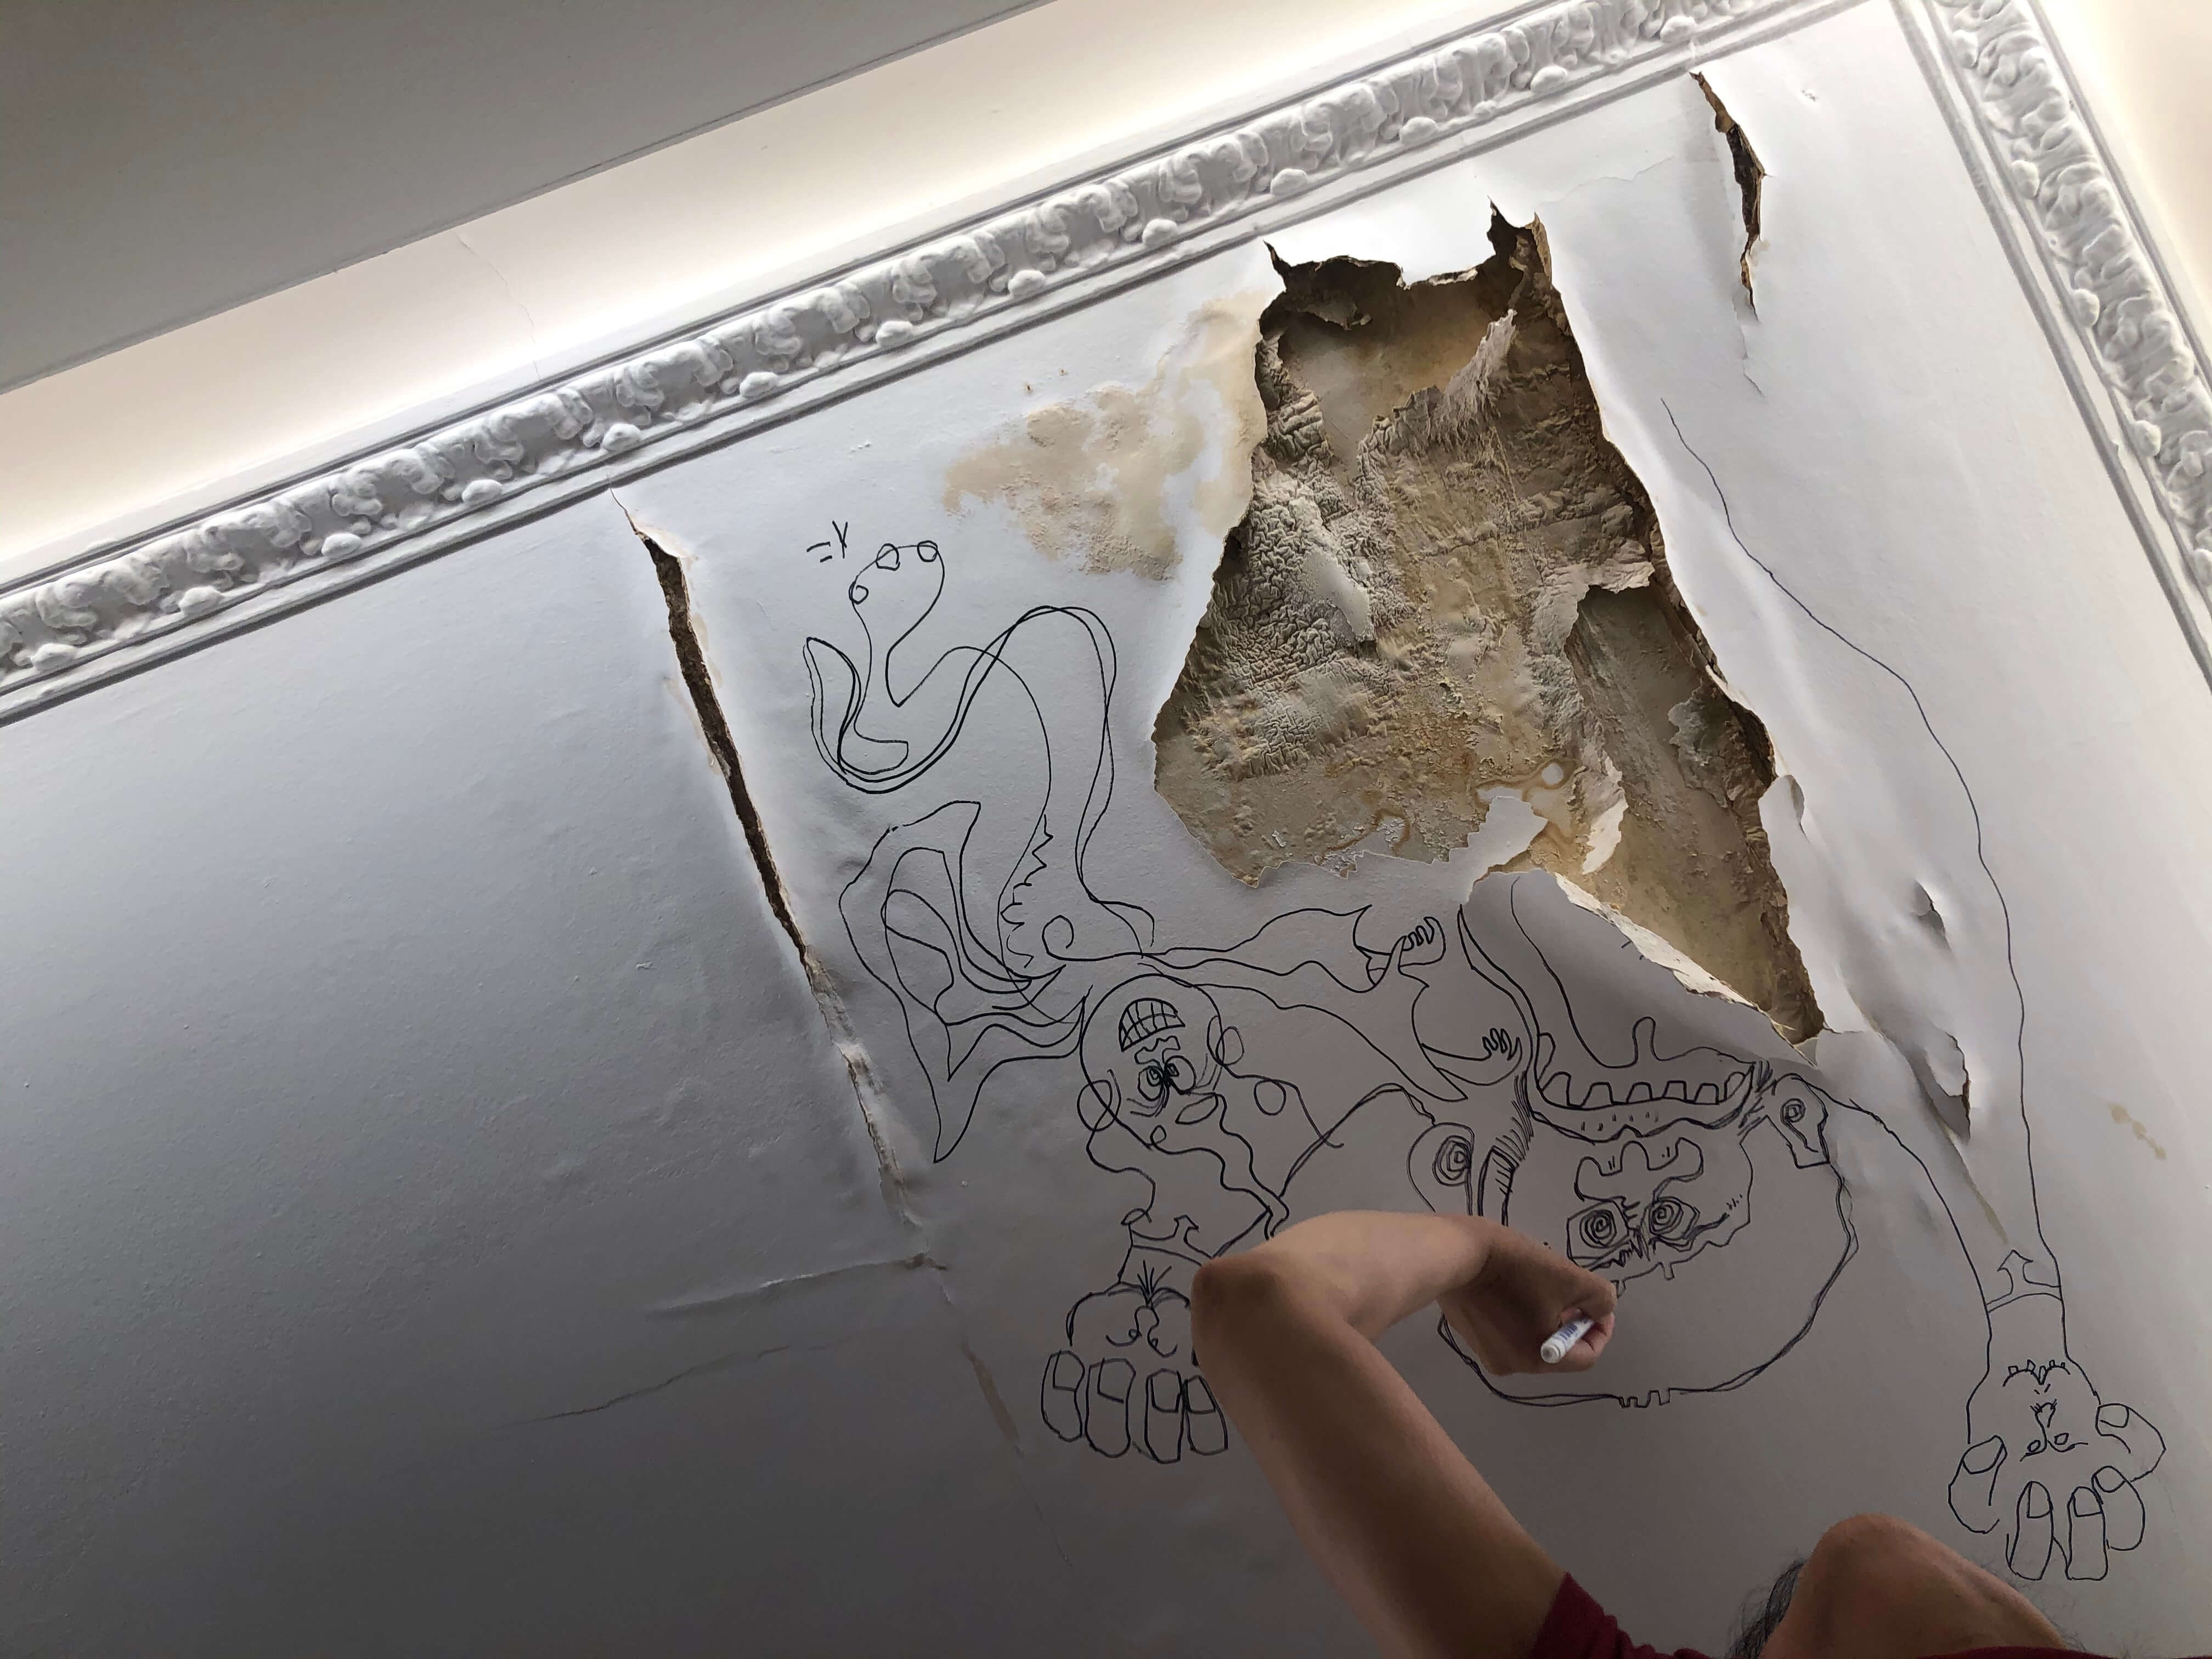 退屈日記「水漏れで崩落した天井に壁画を描く」